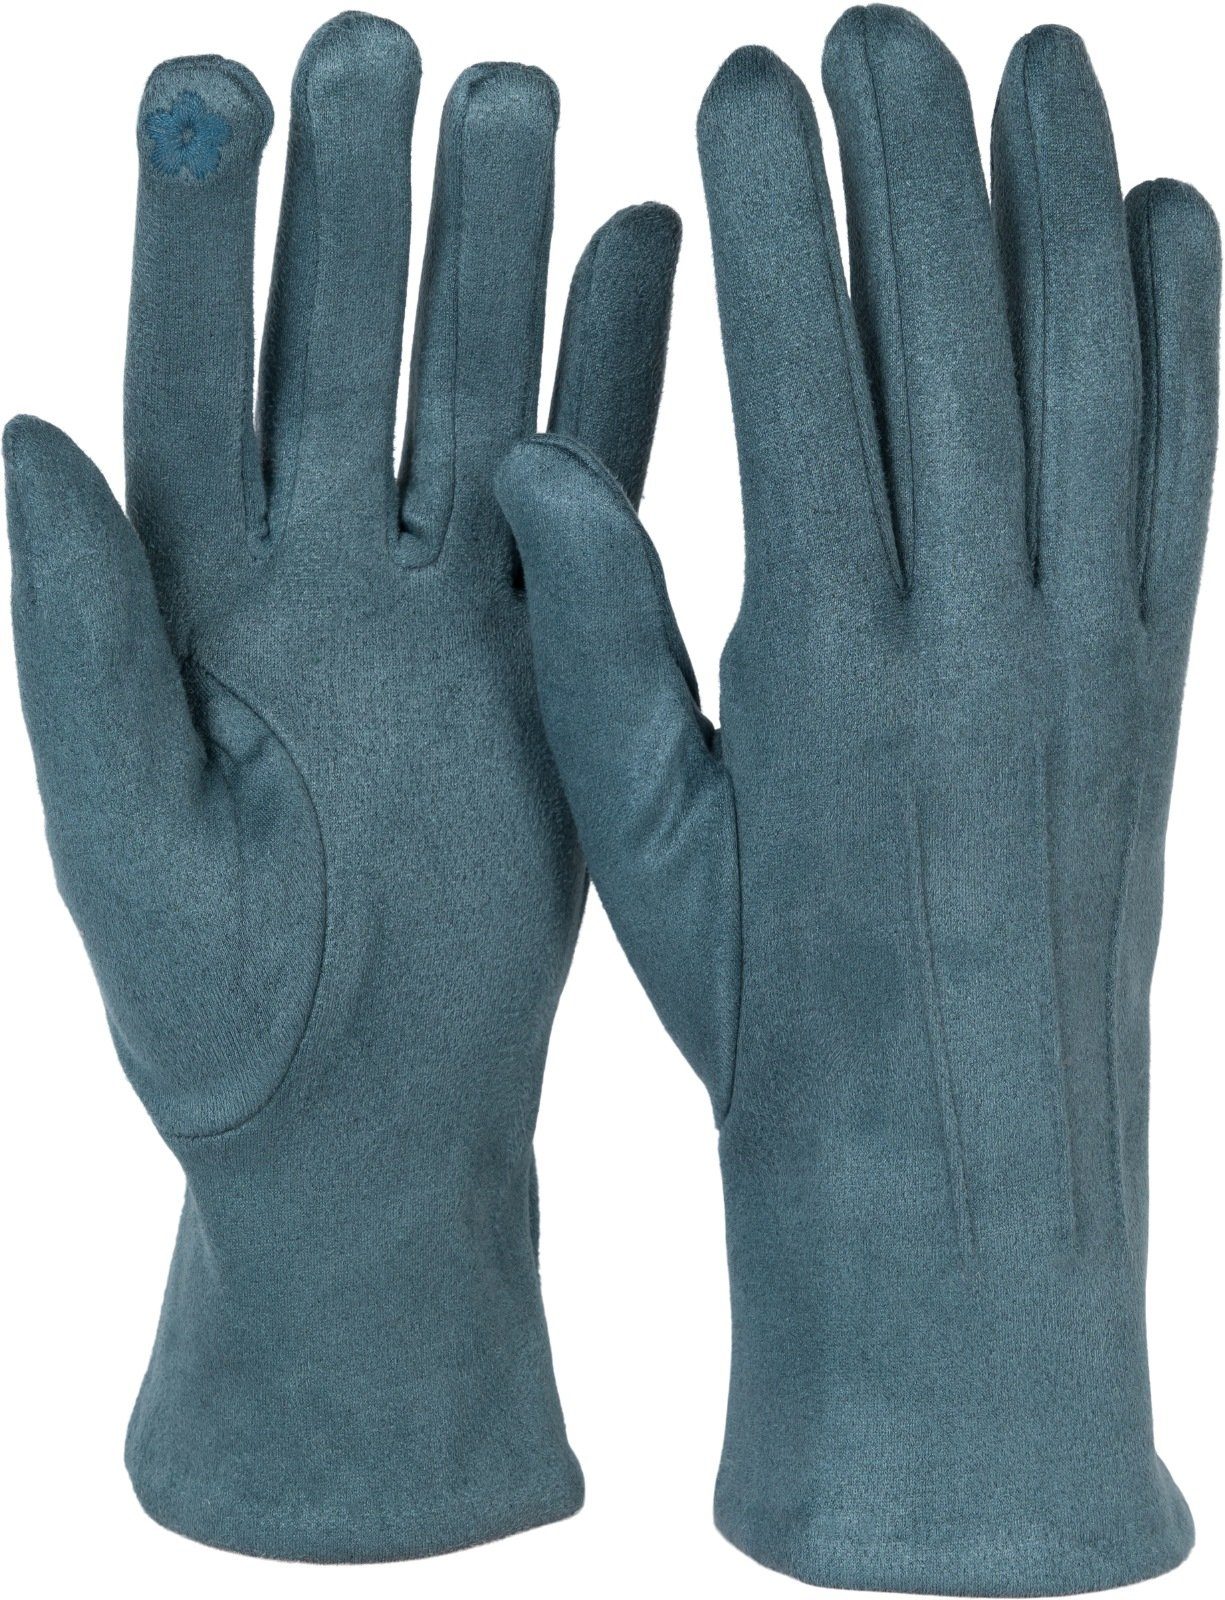 styleBREAKER Fleecehandschuhe Einfarbige Touchscreen Handschuhe Ziernähte Grau-Blau